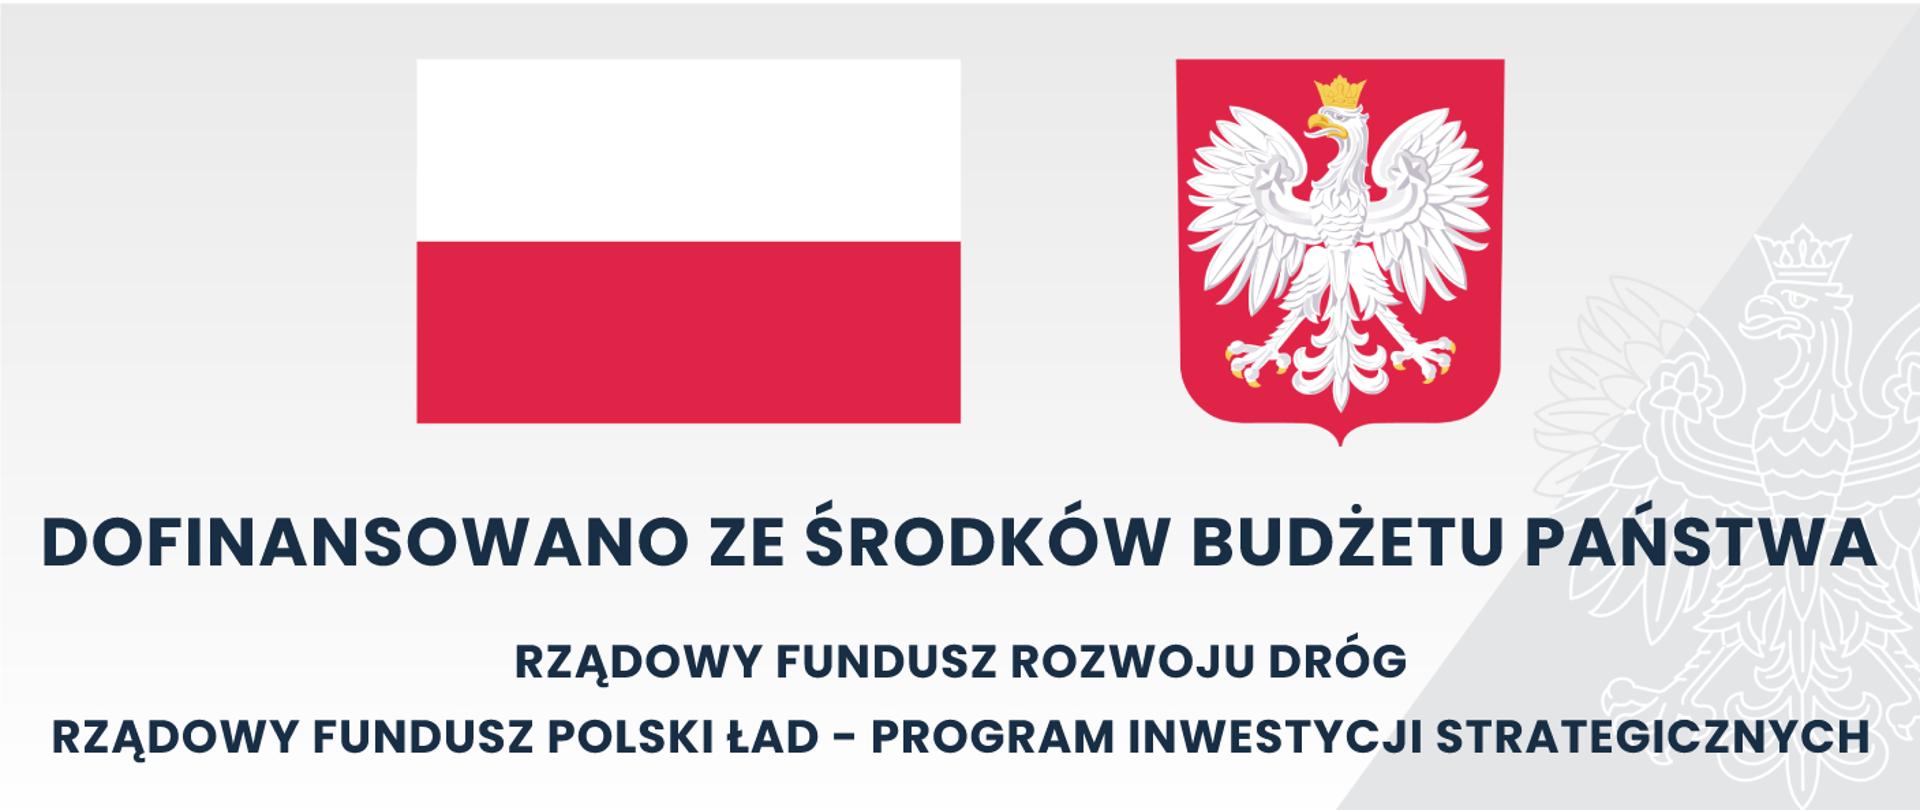 Szara tablica z flagą oraz godłem polskim z napisem dofinansowano ze środków Budżetu Państwa
Rządowy Fundusz Rozwoju Dróg, Rządowy Fundusz Polski Ład - Program Inwestycji Strategicznych